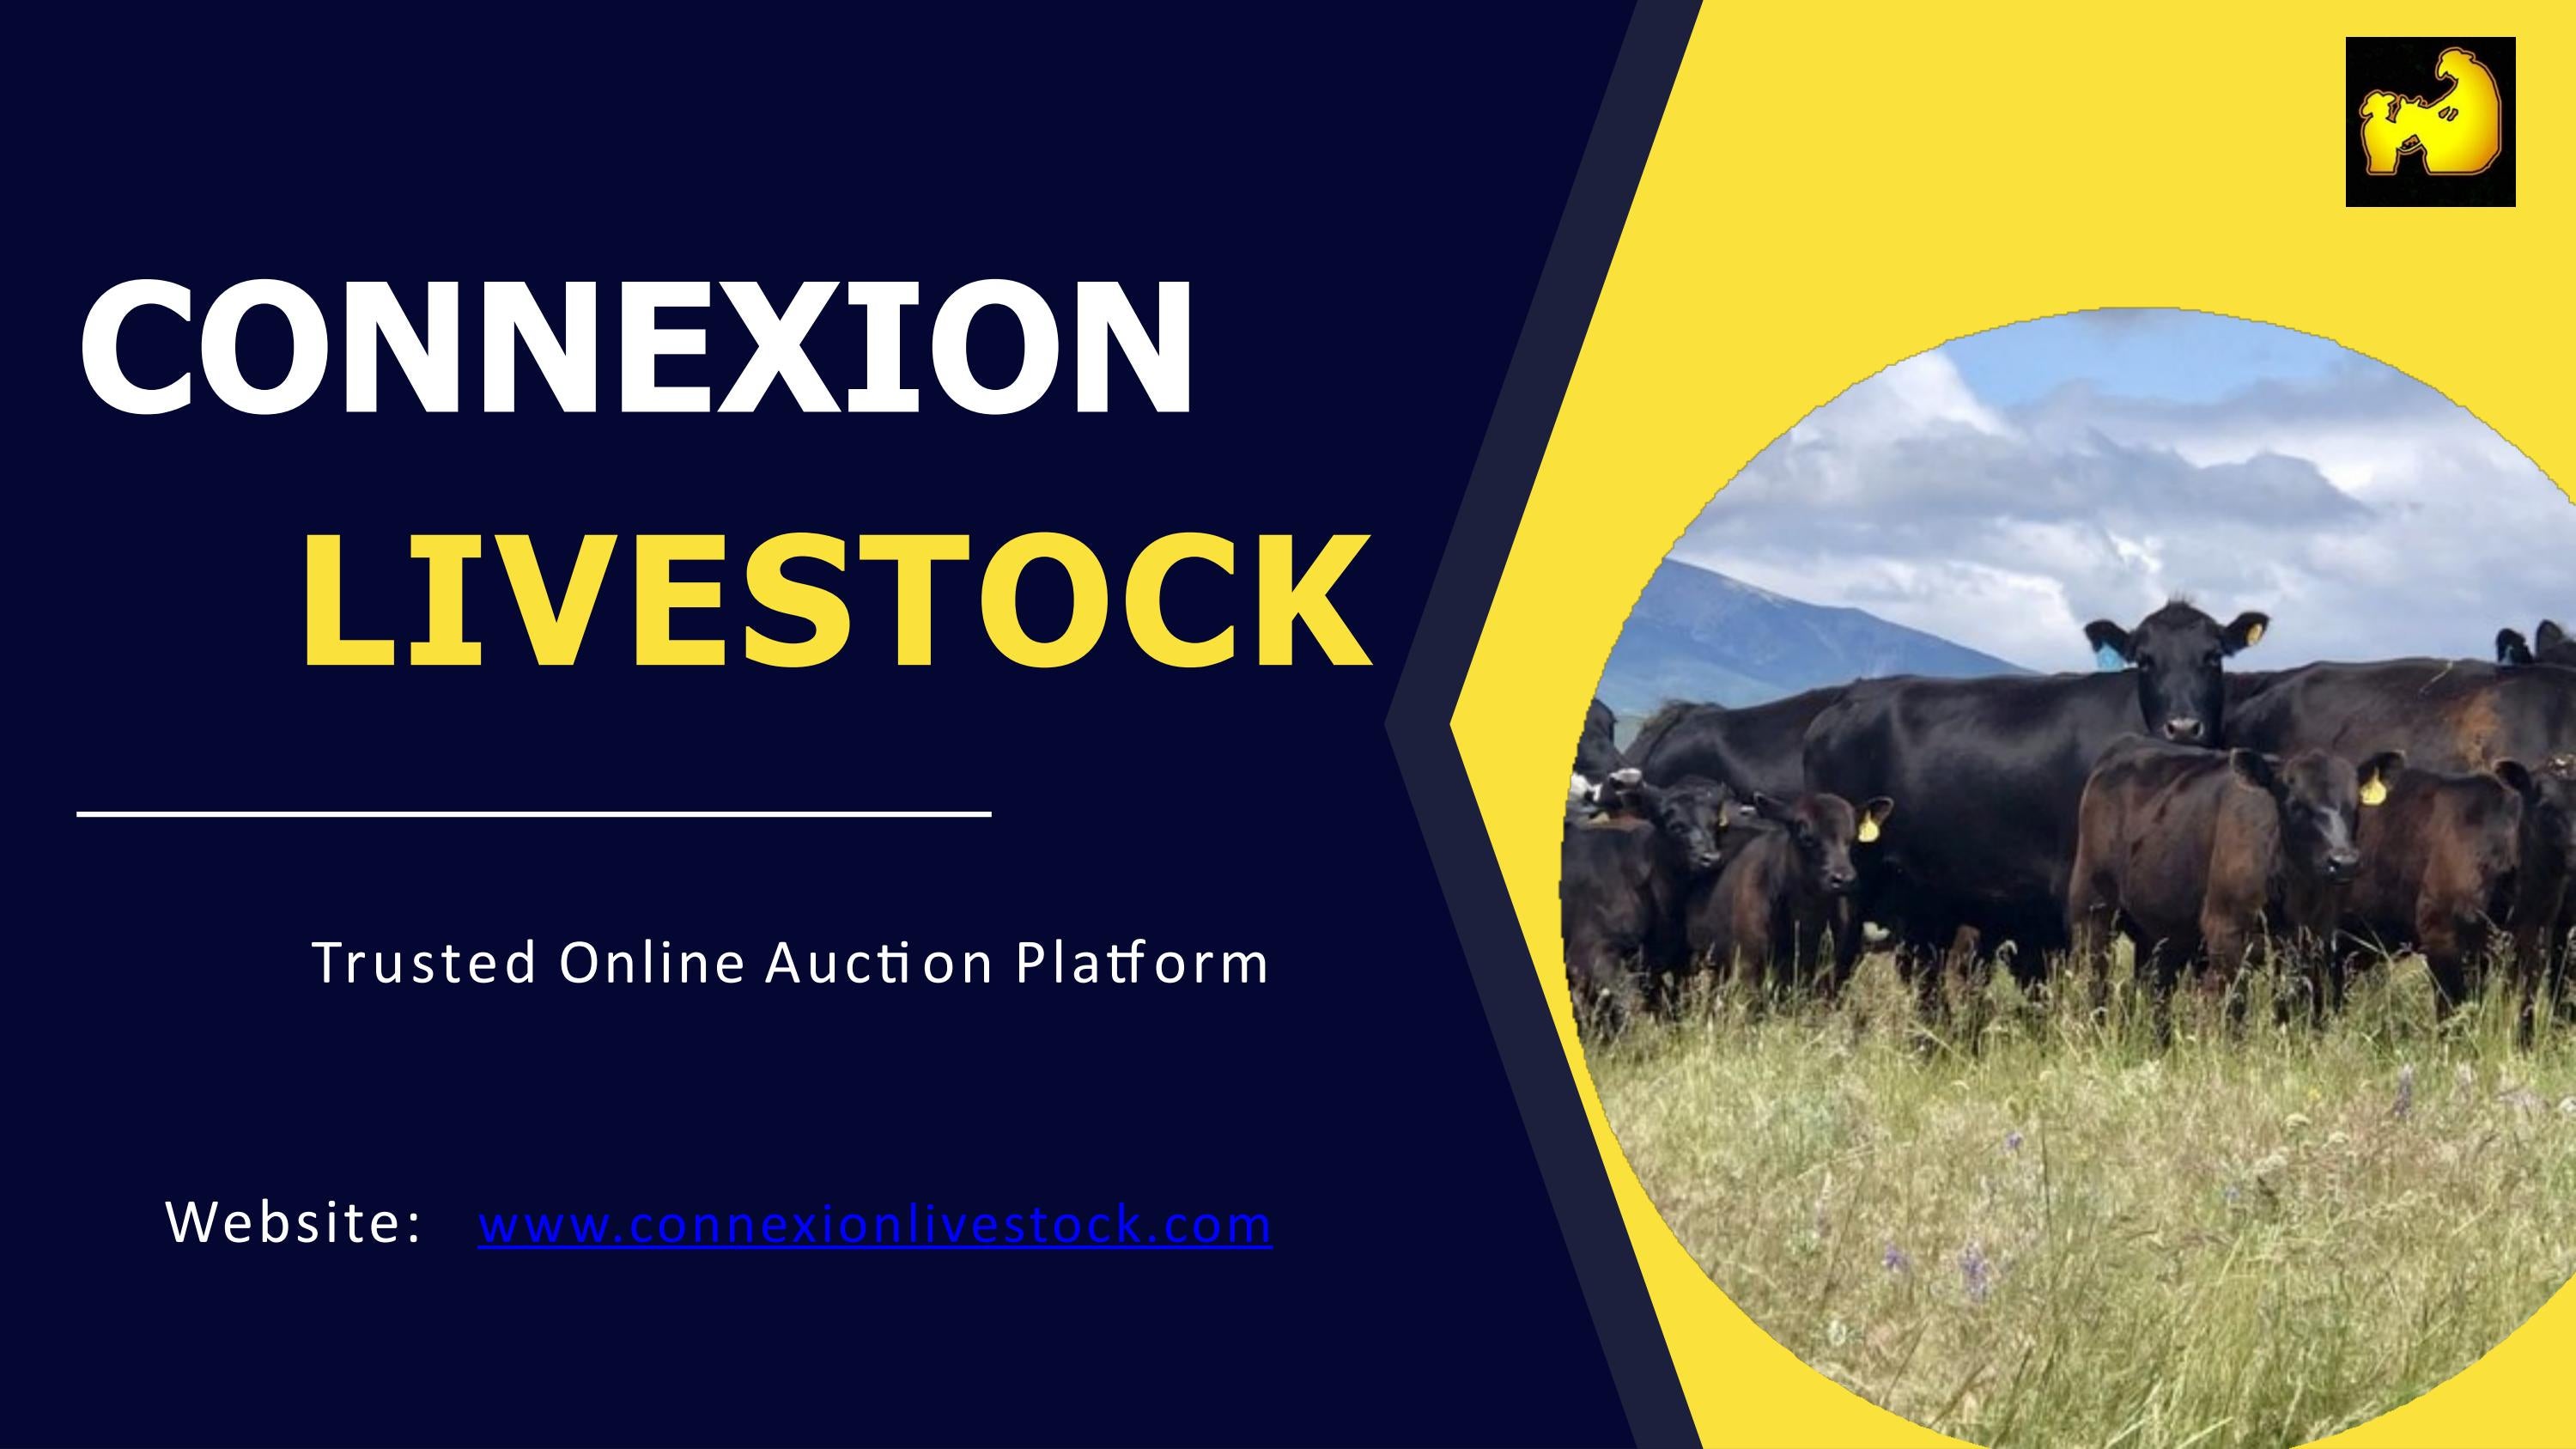 Trusted Online Auction Platform - ConneXion Livestock